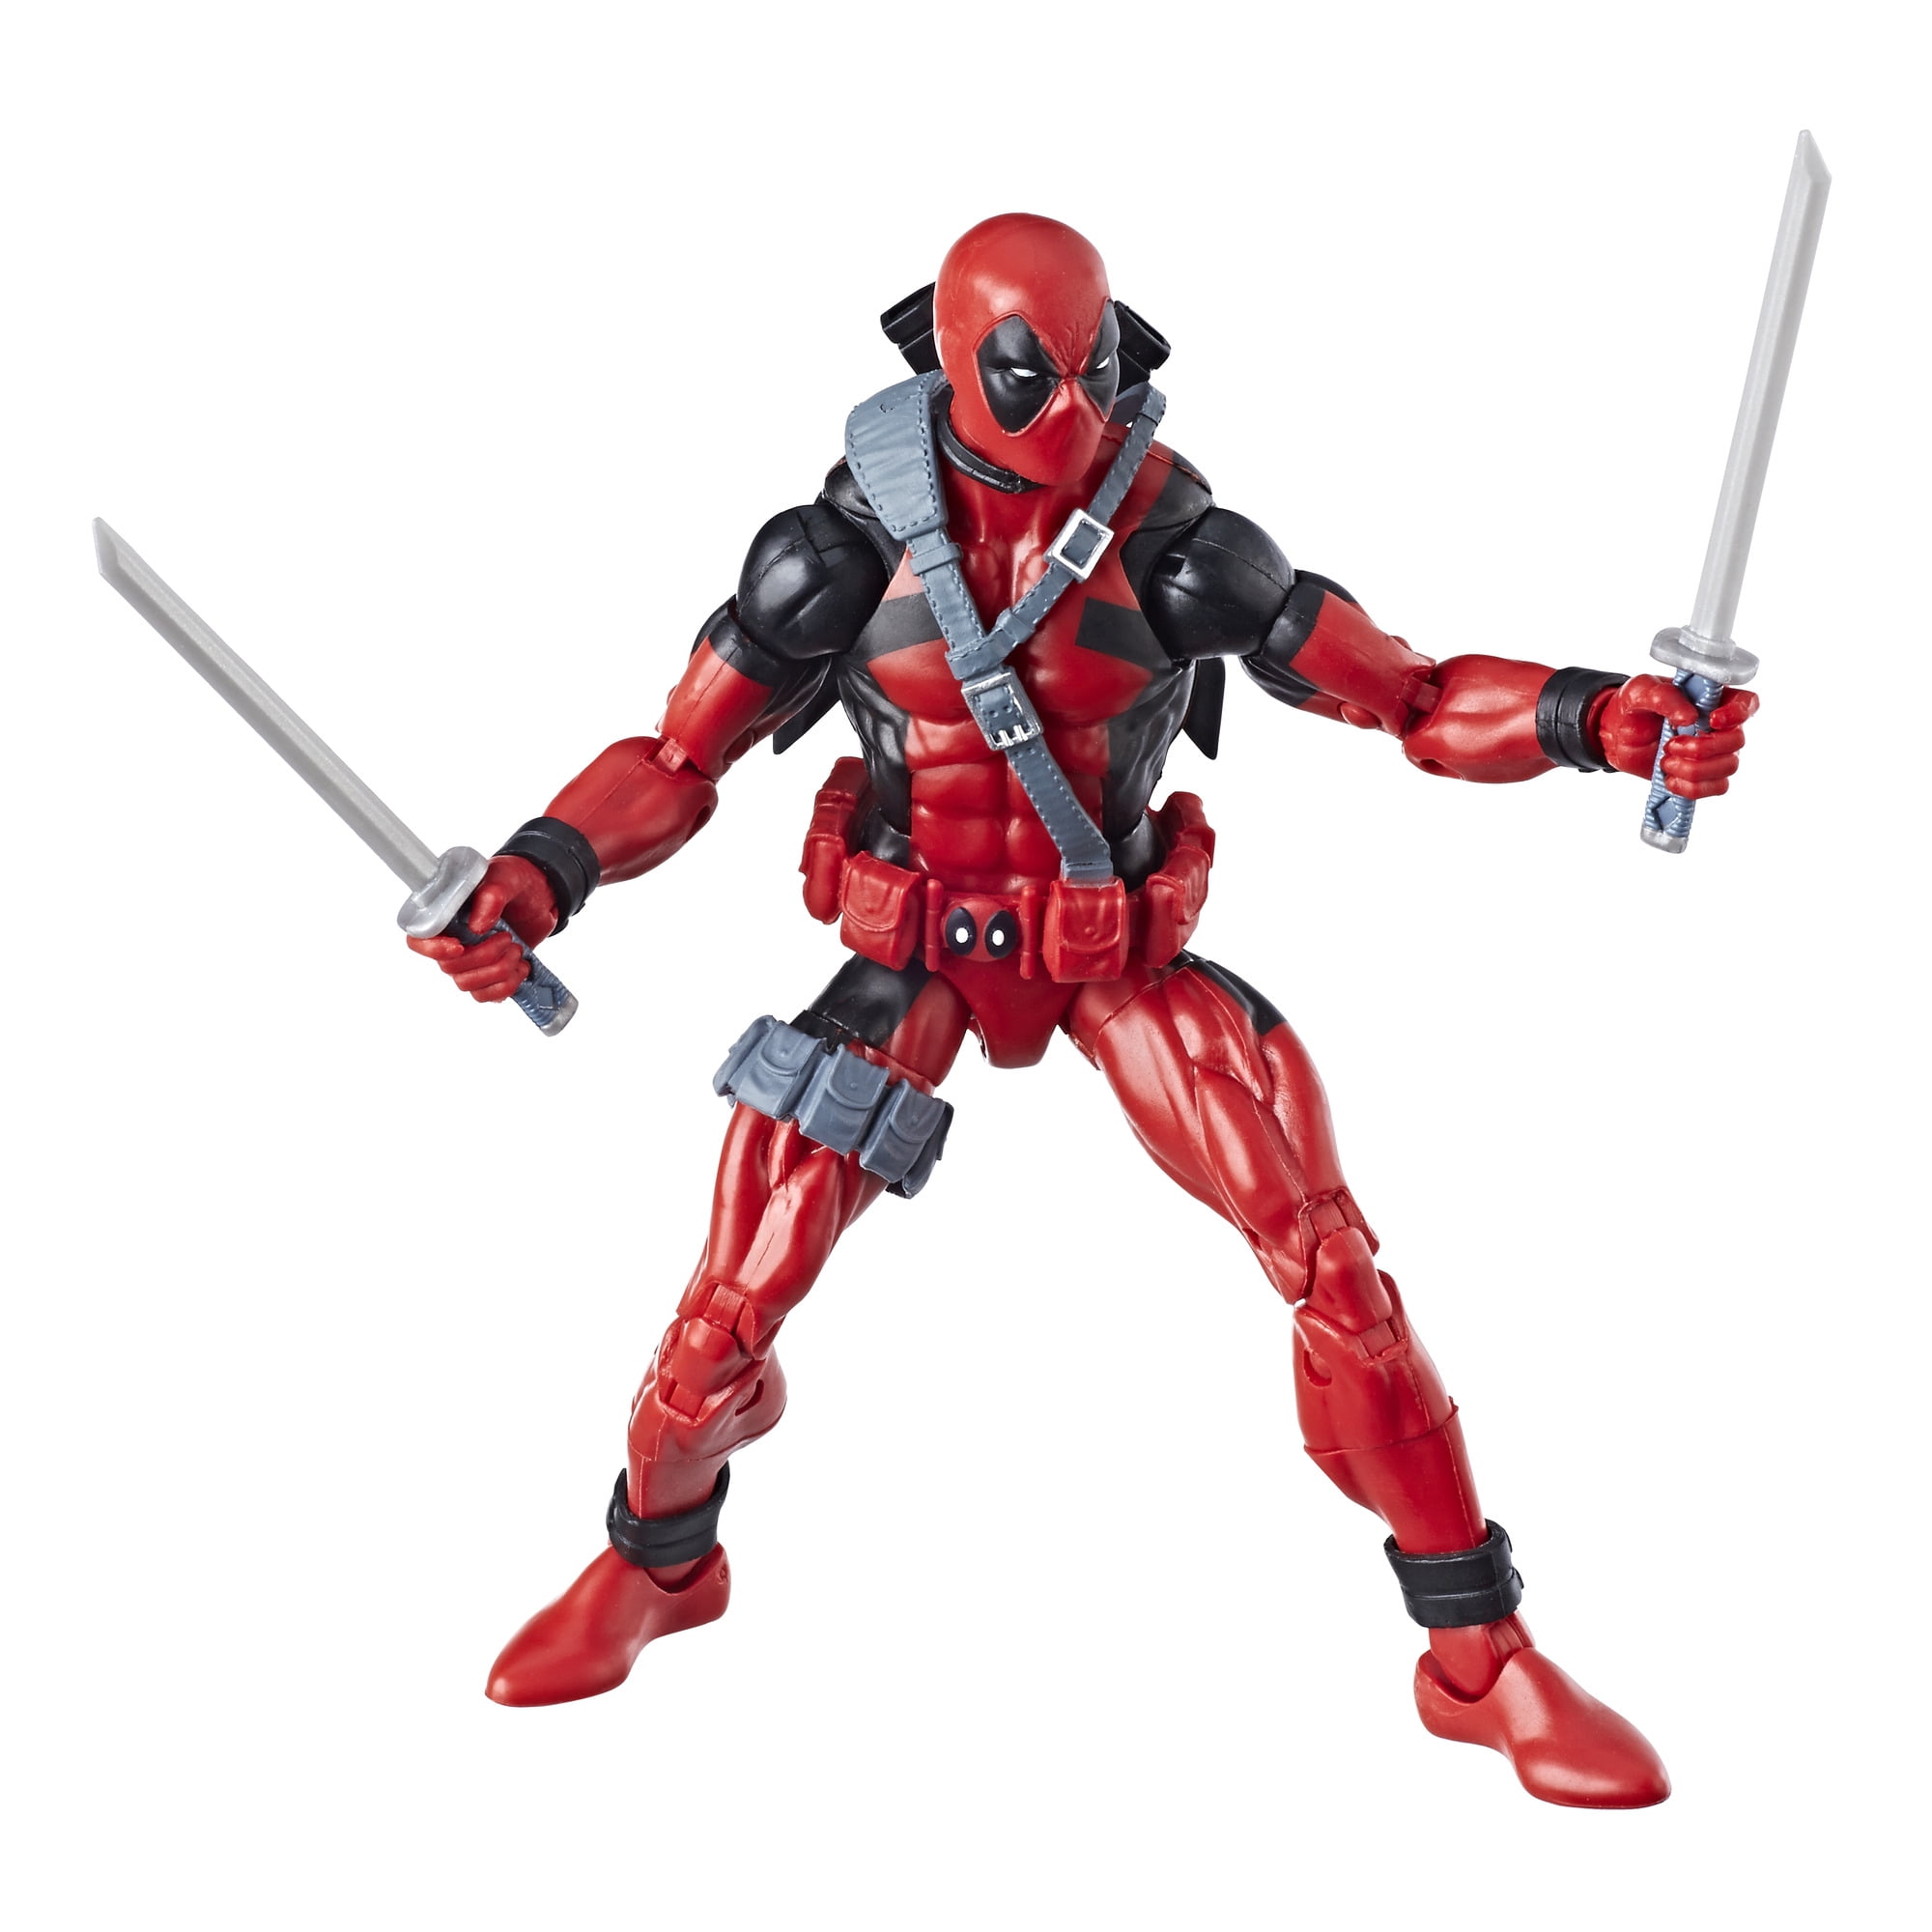 Marvel Avengers Deadpool Toys Children Figurines Gift Statuette Super Heroes New 